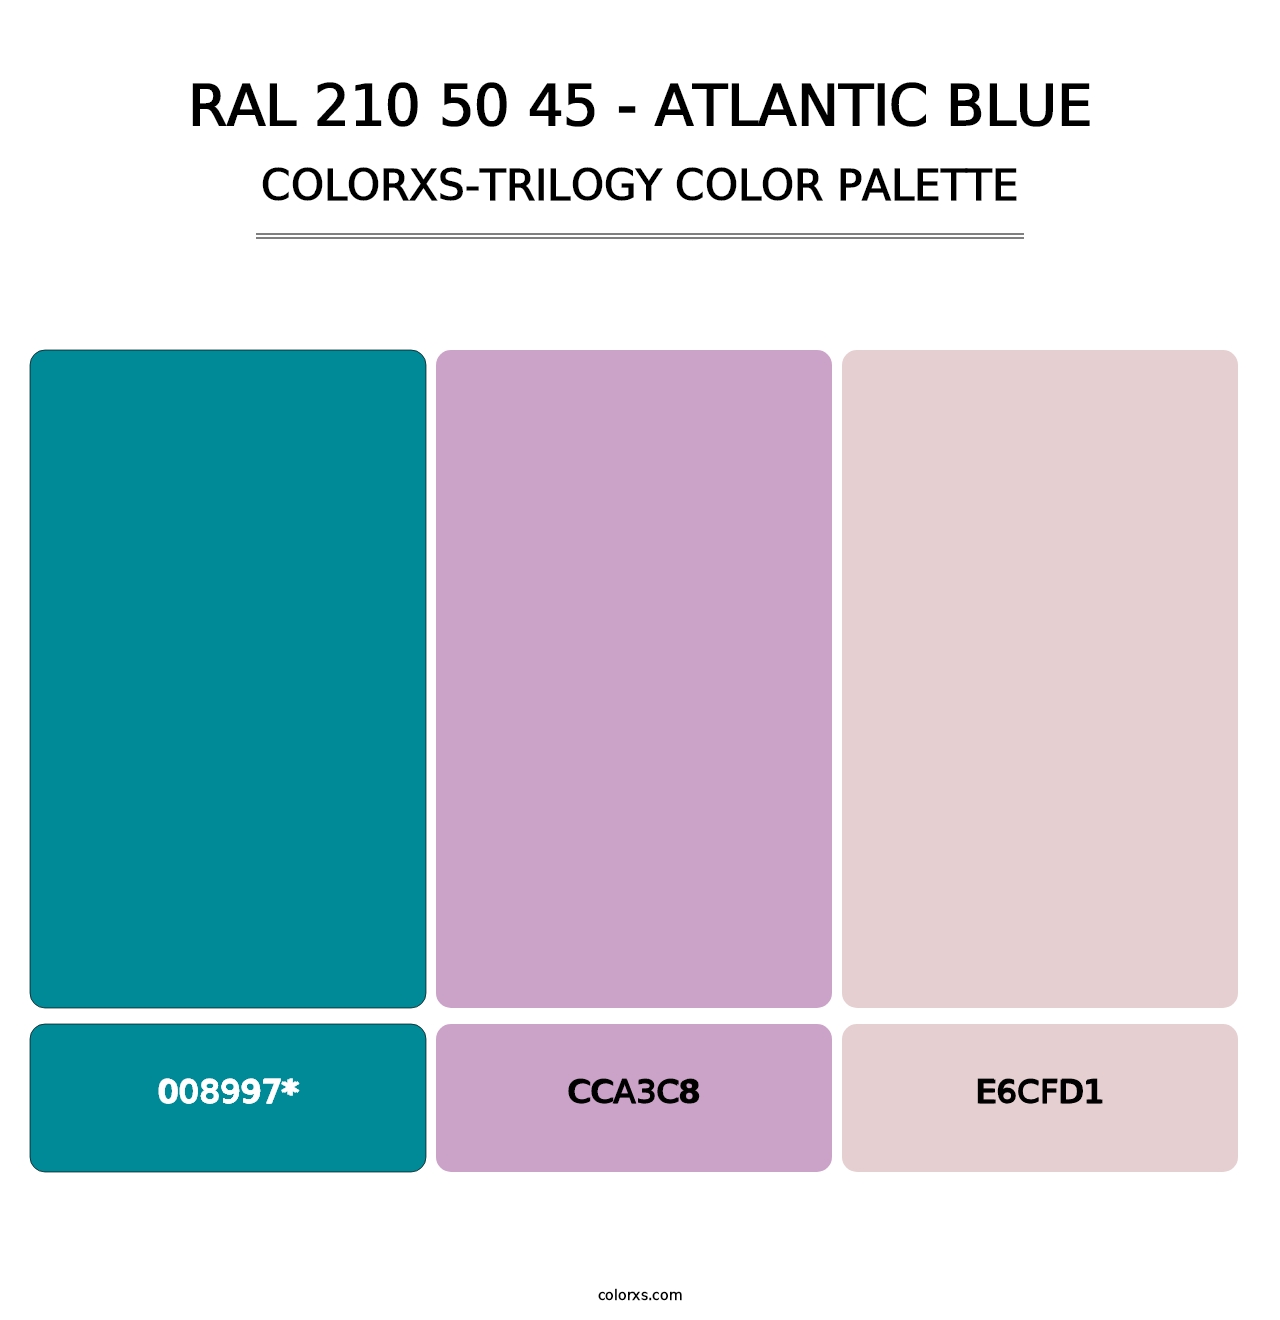 RAL 210 50 45 - Atlantic Blue - Colorxs Trilogy Palette